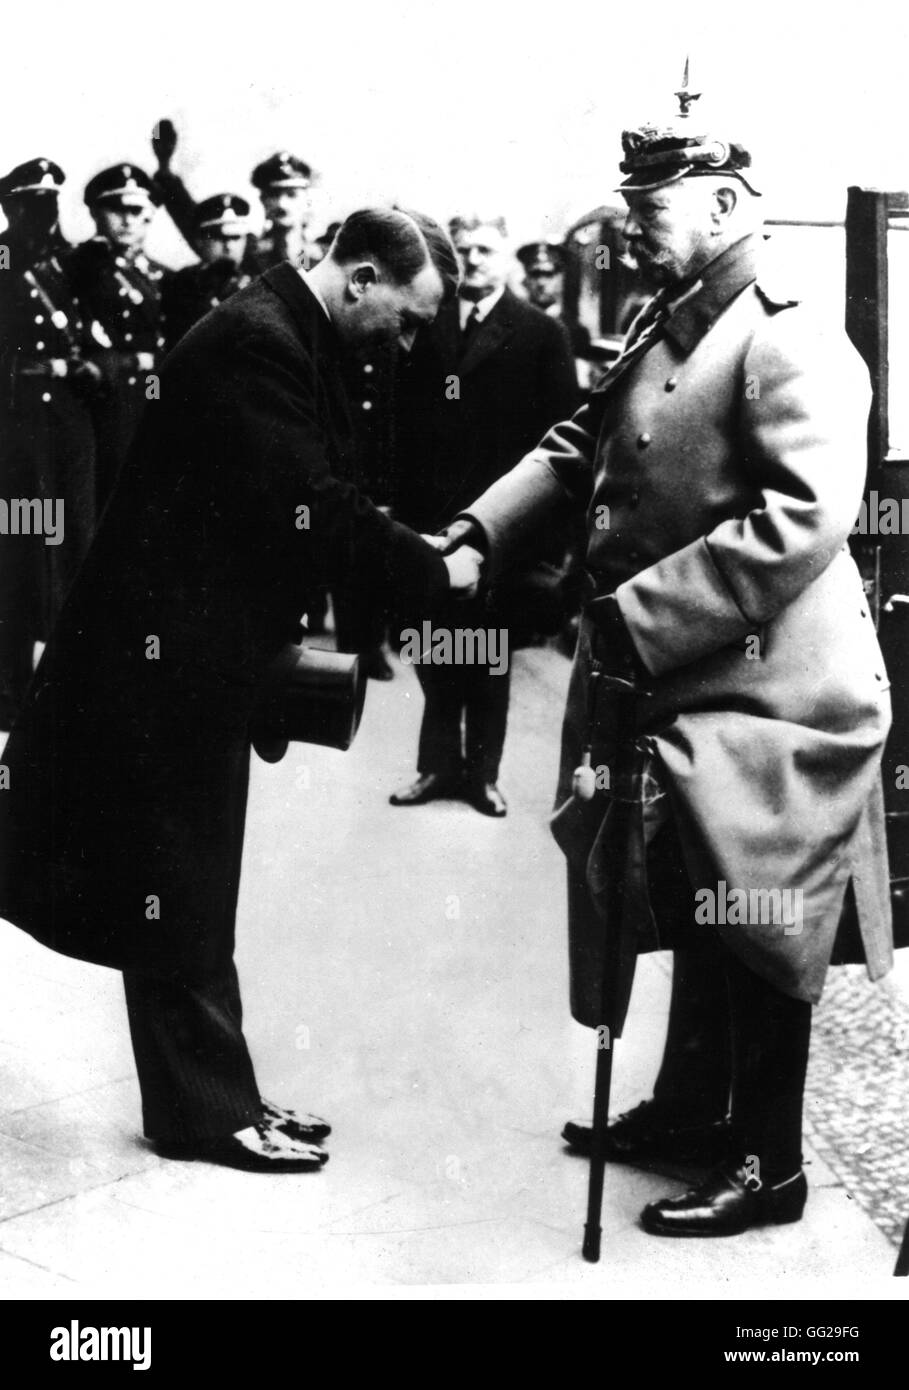 Hitler le maréchal Hindenburg reçoit au cours d'une réception nazie Allemagne Juin 1933 Paris. Bibliothèque nationale Banque D'Images